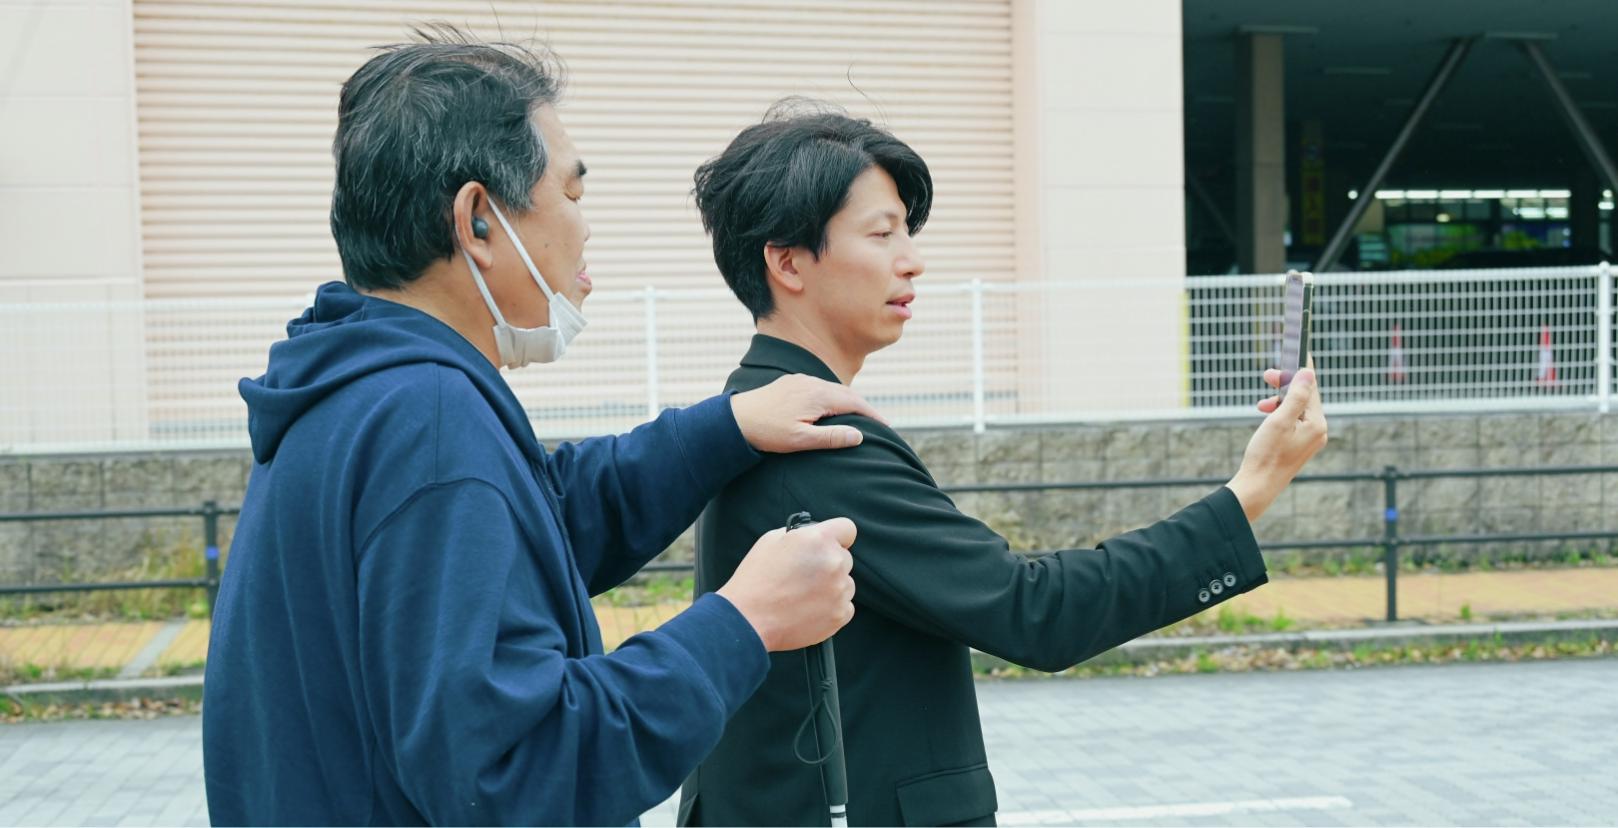 髙田将平さんがスマートフォンを掲げ白杖を持った男性に肩を貸している